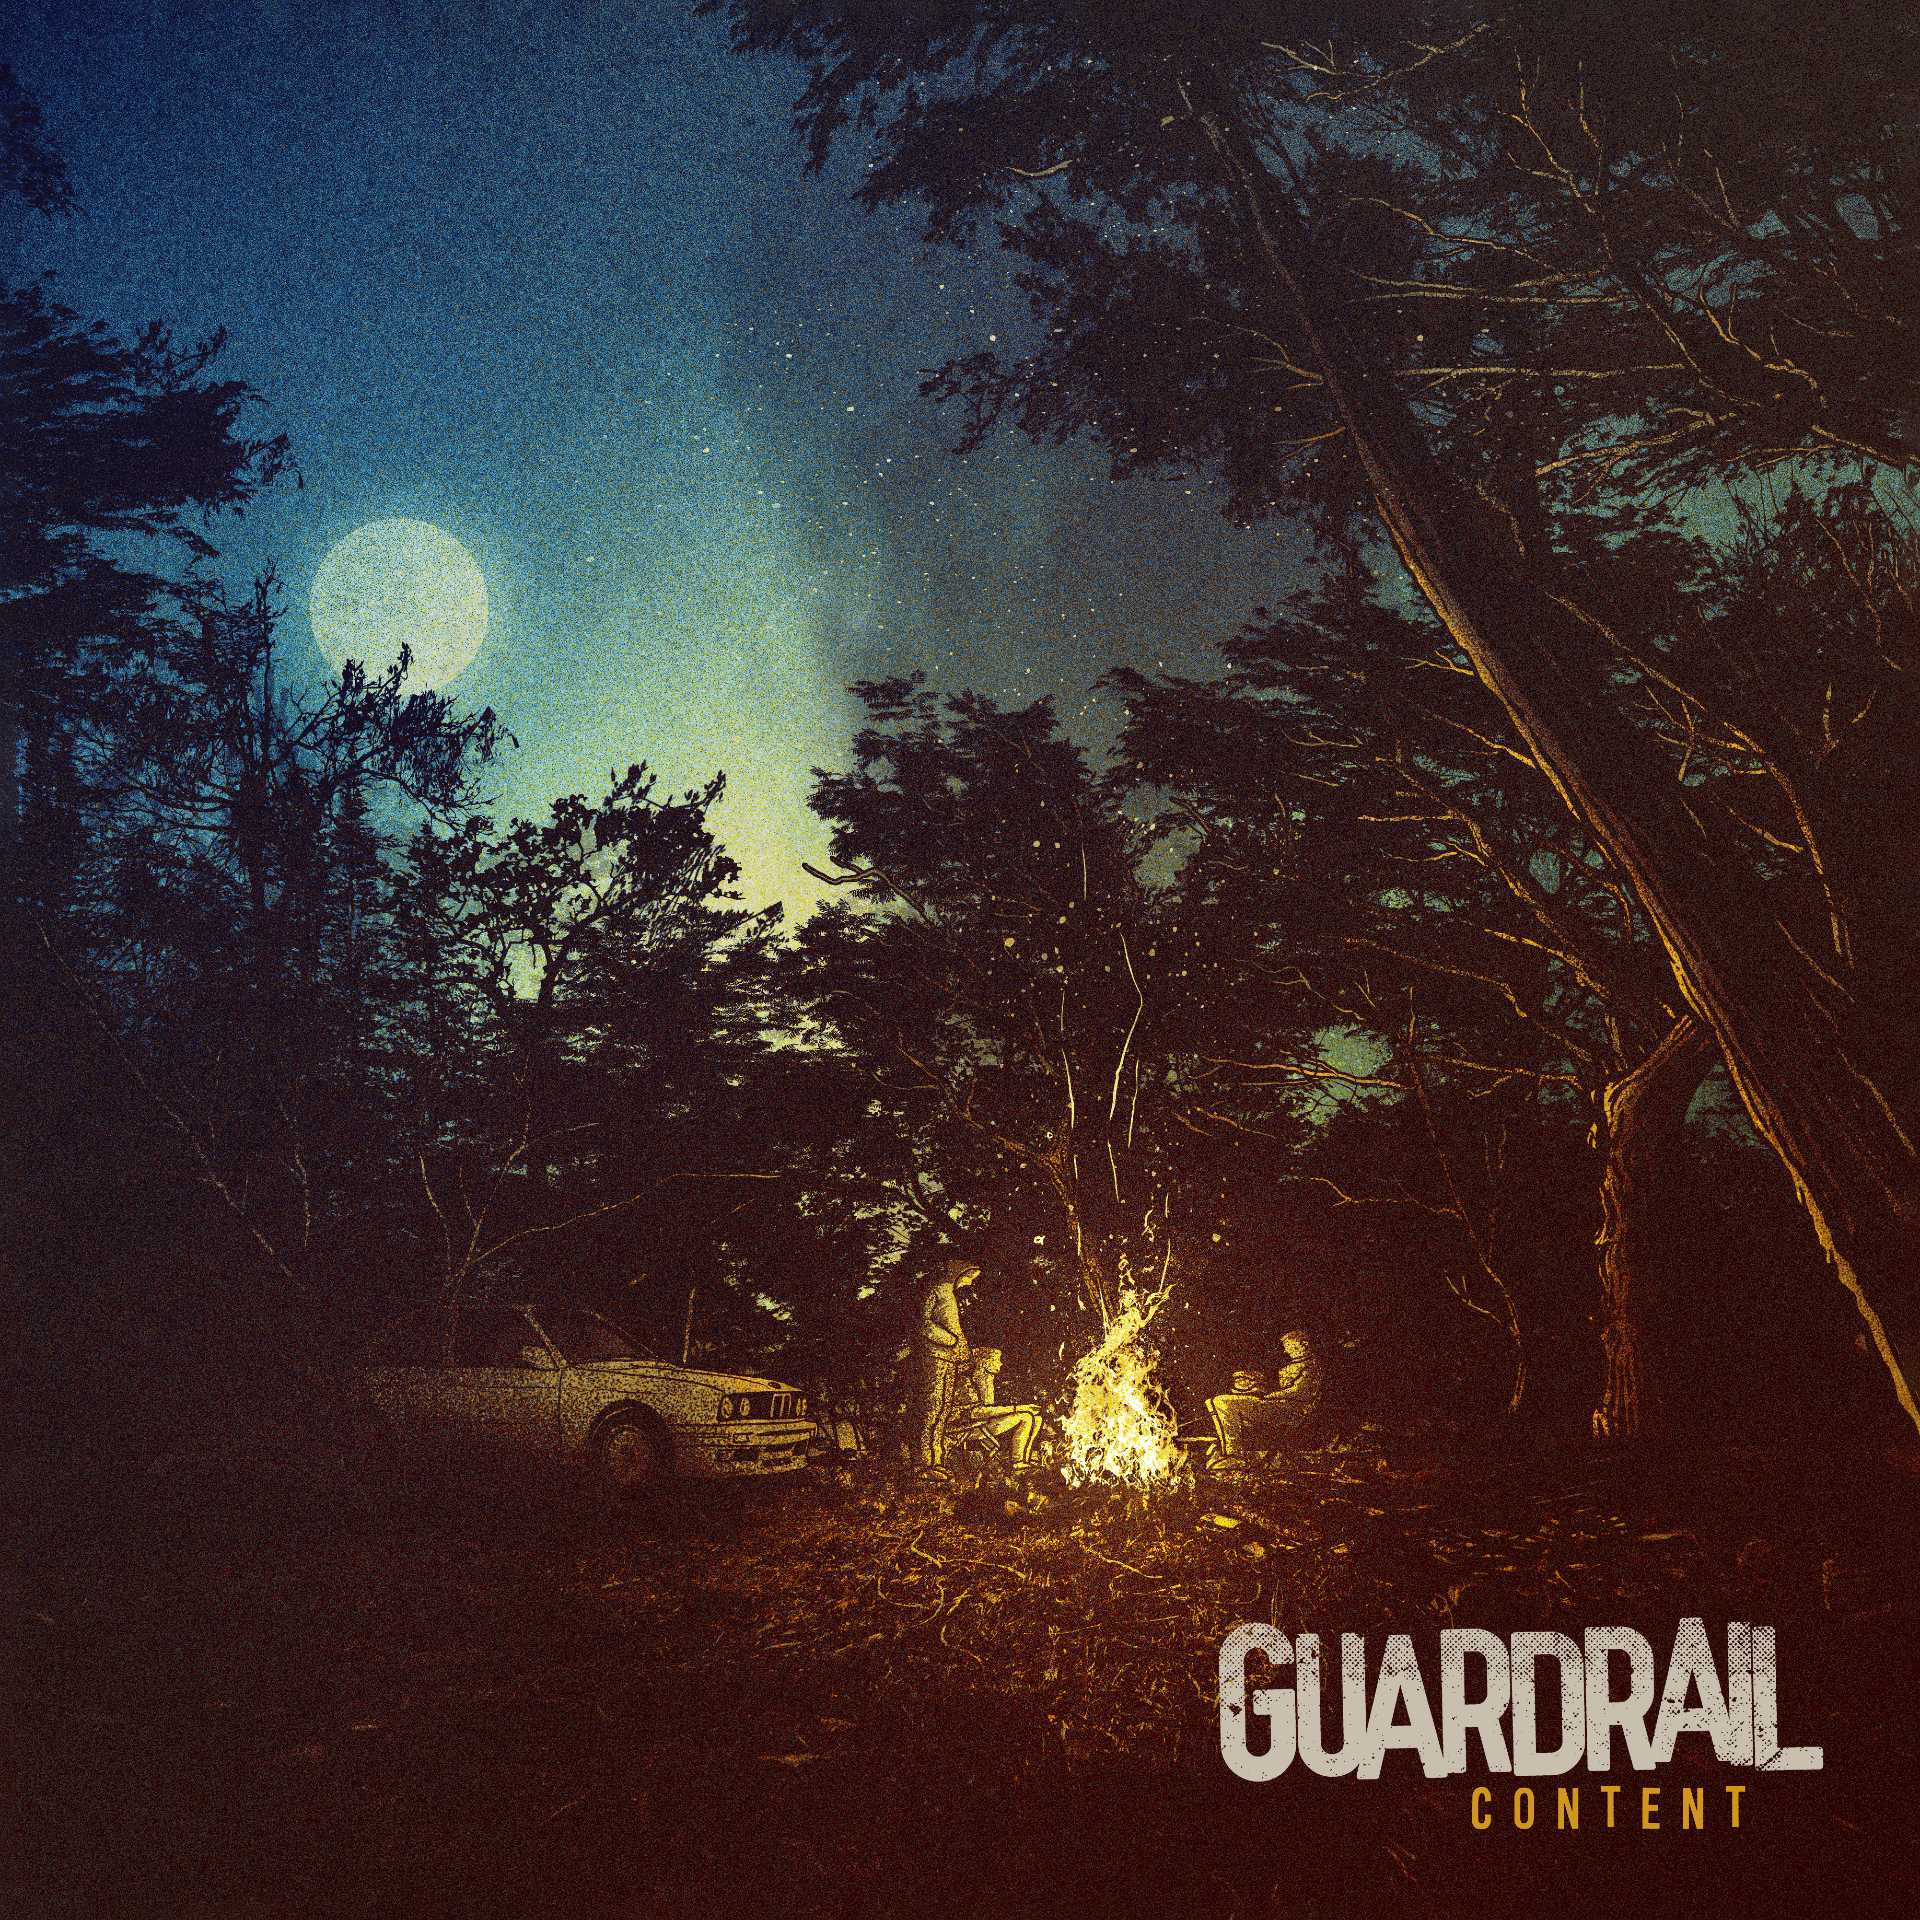 Guardrail ‘Content’ album artwork